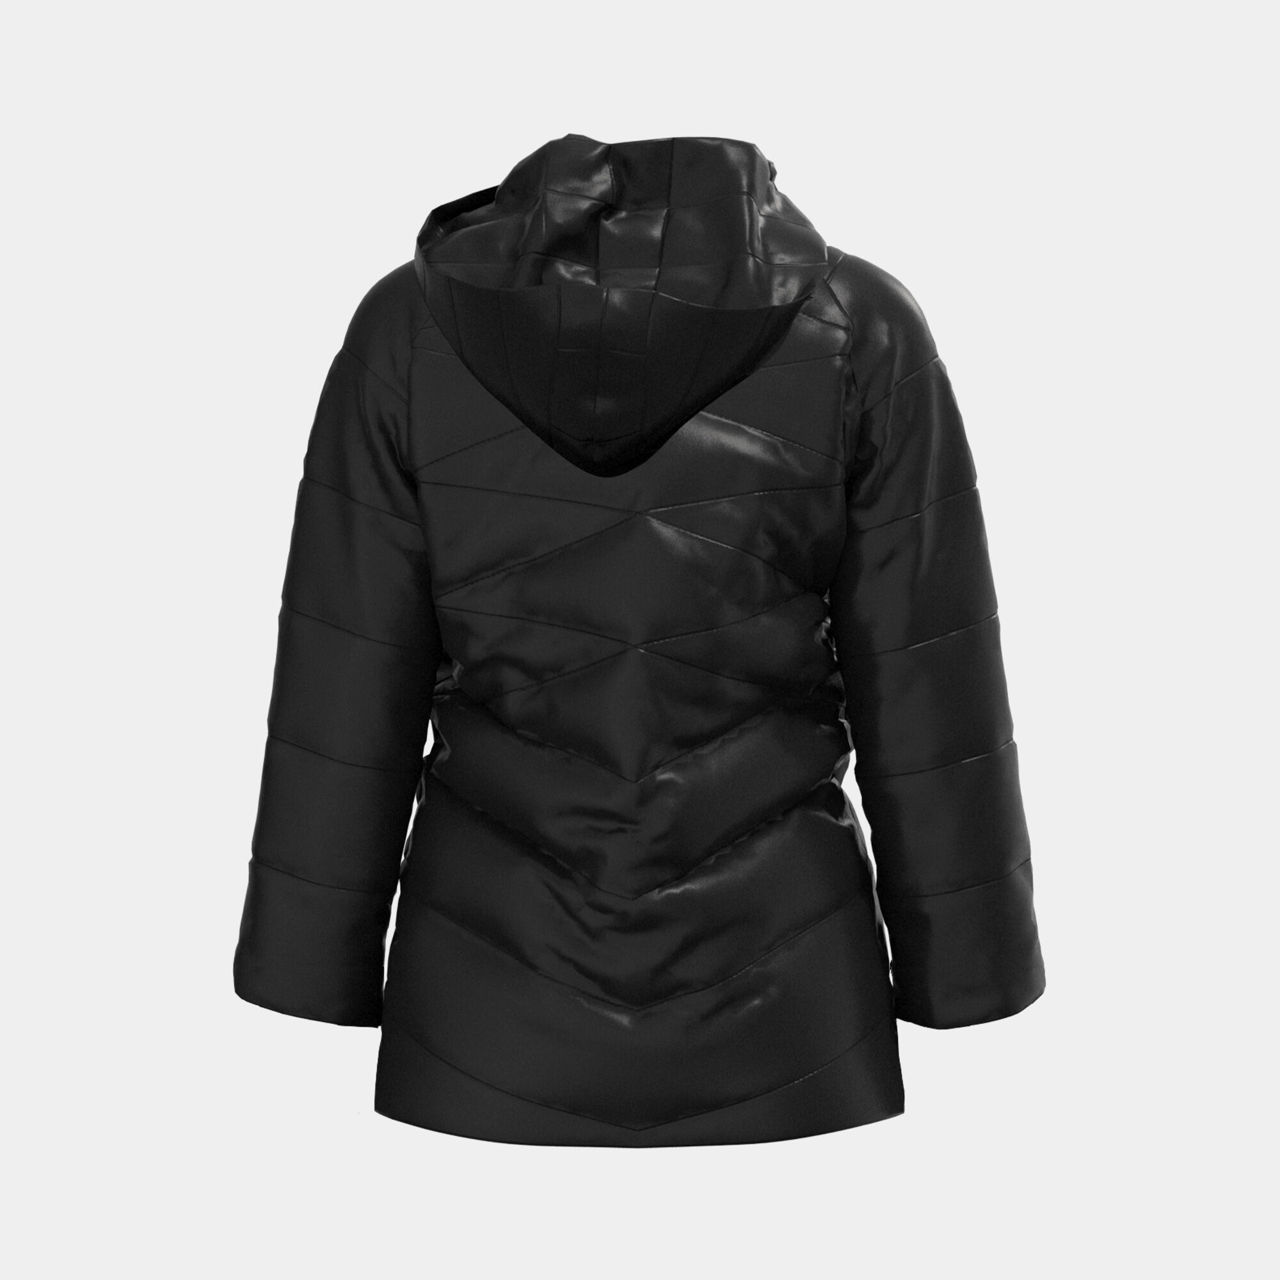 FINAL SALE - Женская куртка JOMA - EXPLORER ANORAK BLACK Купить в